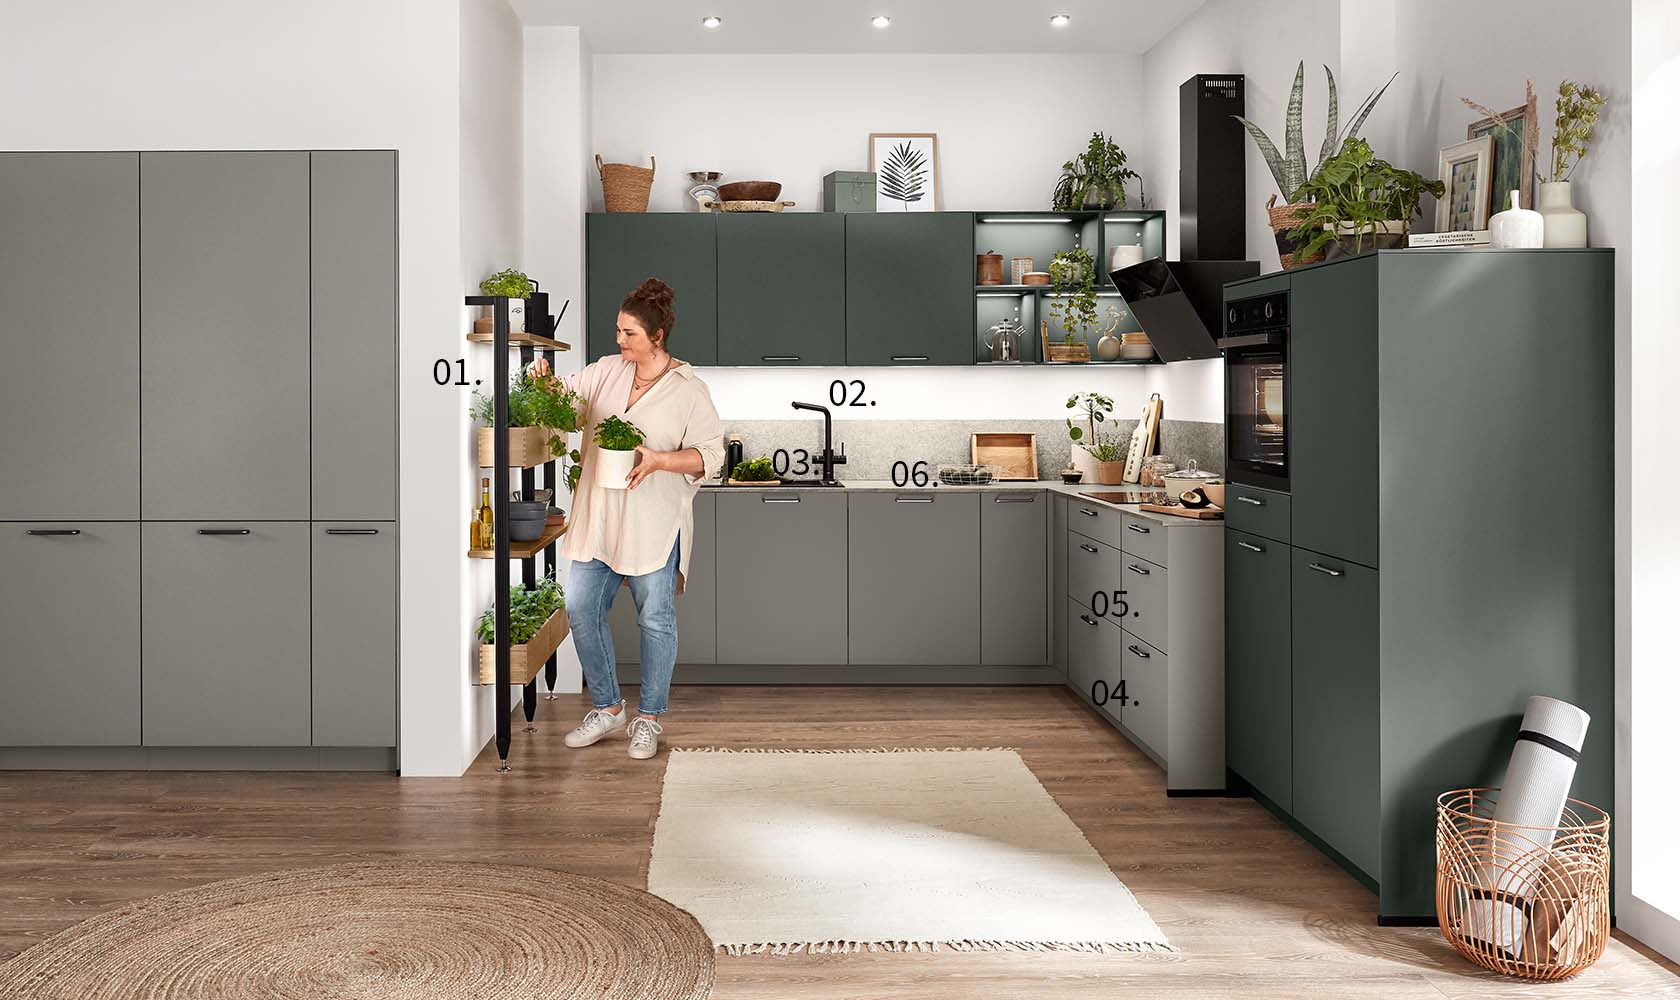 Une femme se tient dans une cuisine moderne avec des pointeurs numérotés mettant en évidence des caractéristiques telles que les armoires, les appareils électroménagers et les plantes décoratives.